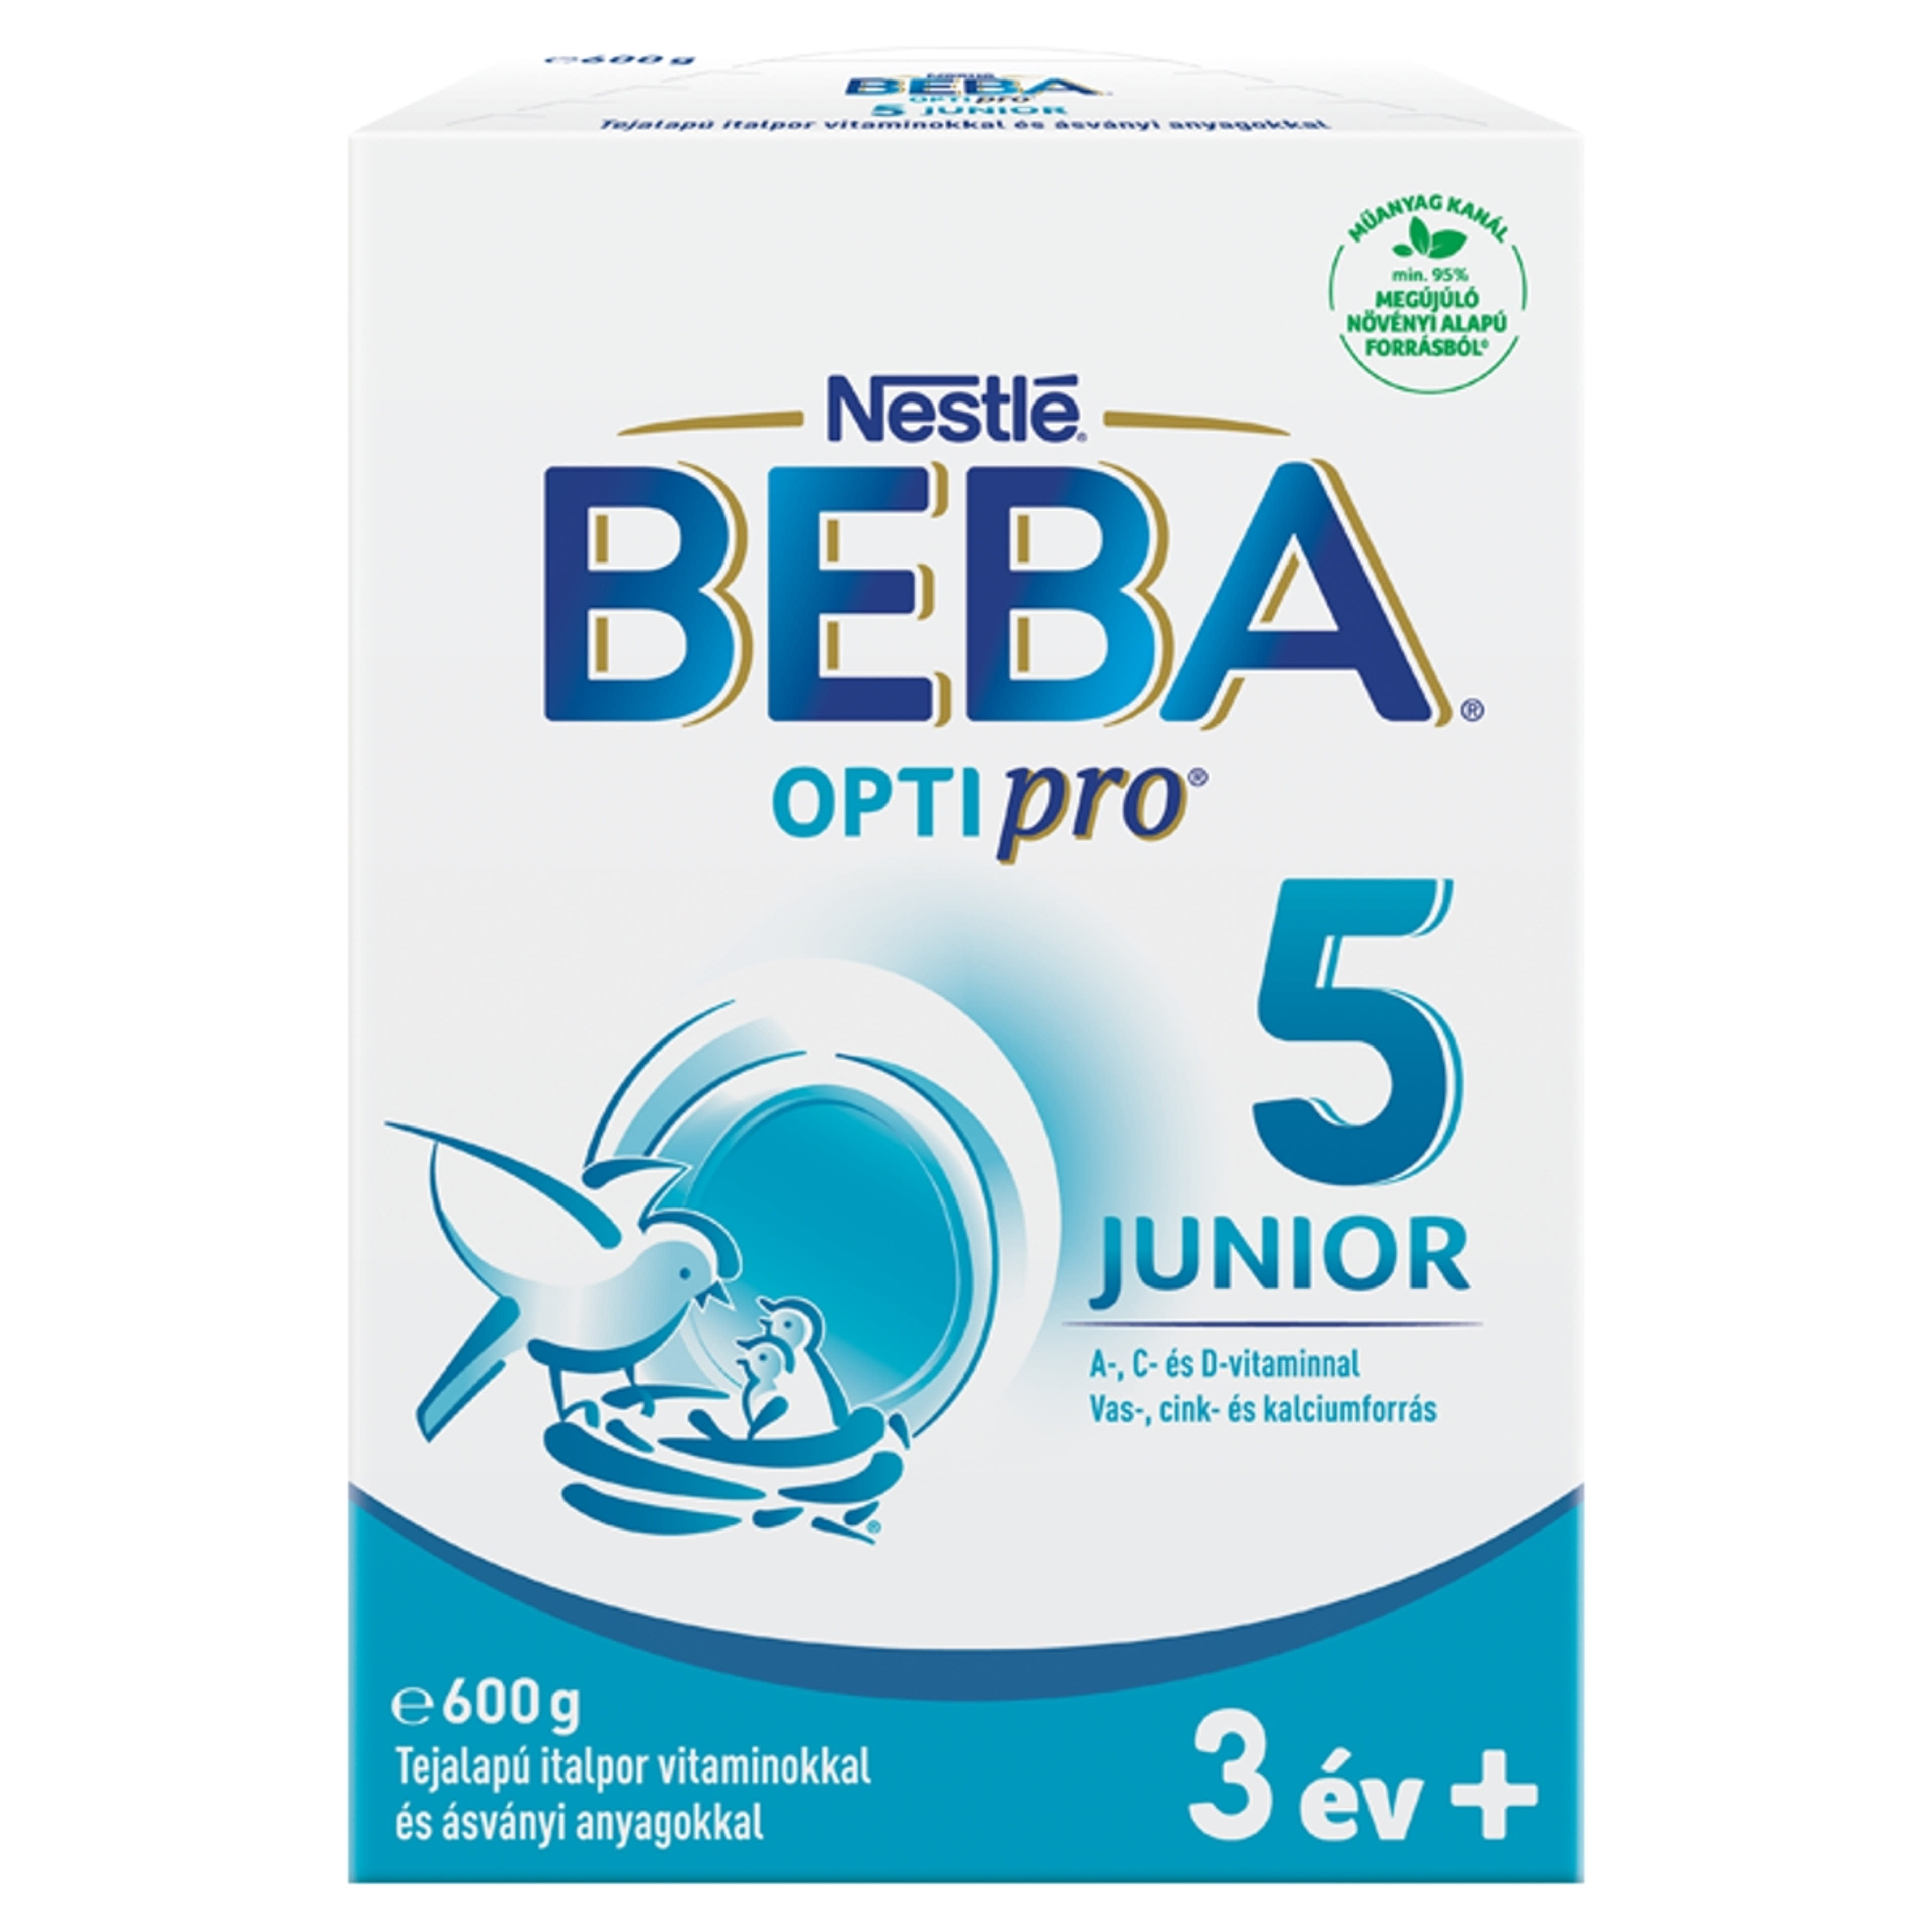 Beba Optipro 5 Junior tejalapú italpor vitaminokkal és ásványi anyagokkal 36 hónapos kortól - 600 g-1